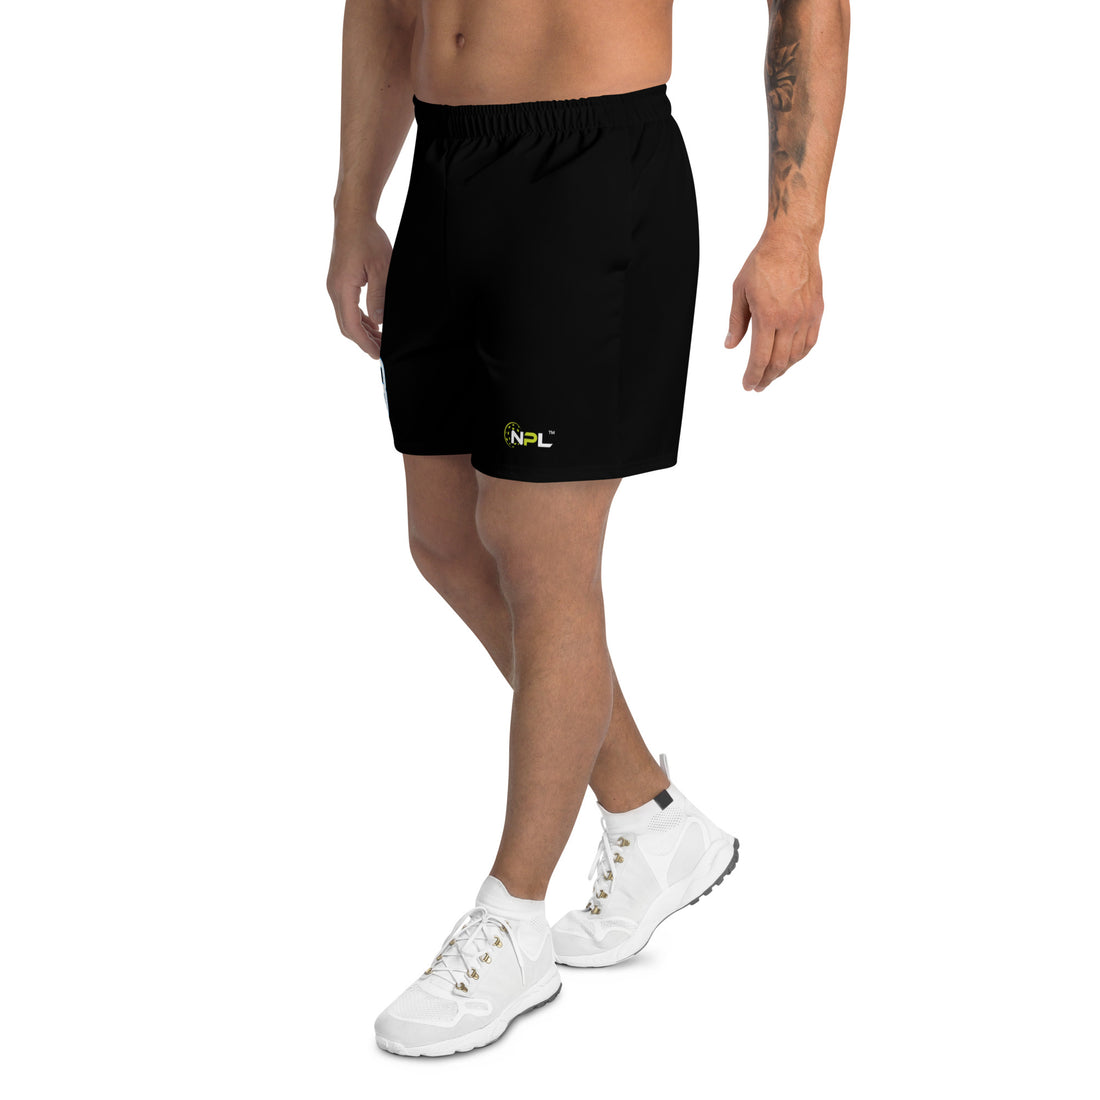 Daniel Gold 28 Boca Raton Picklers™ SKYblue™ Men's Replica Shorts in sleek Black